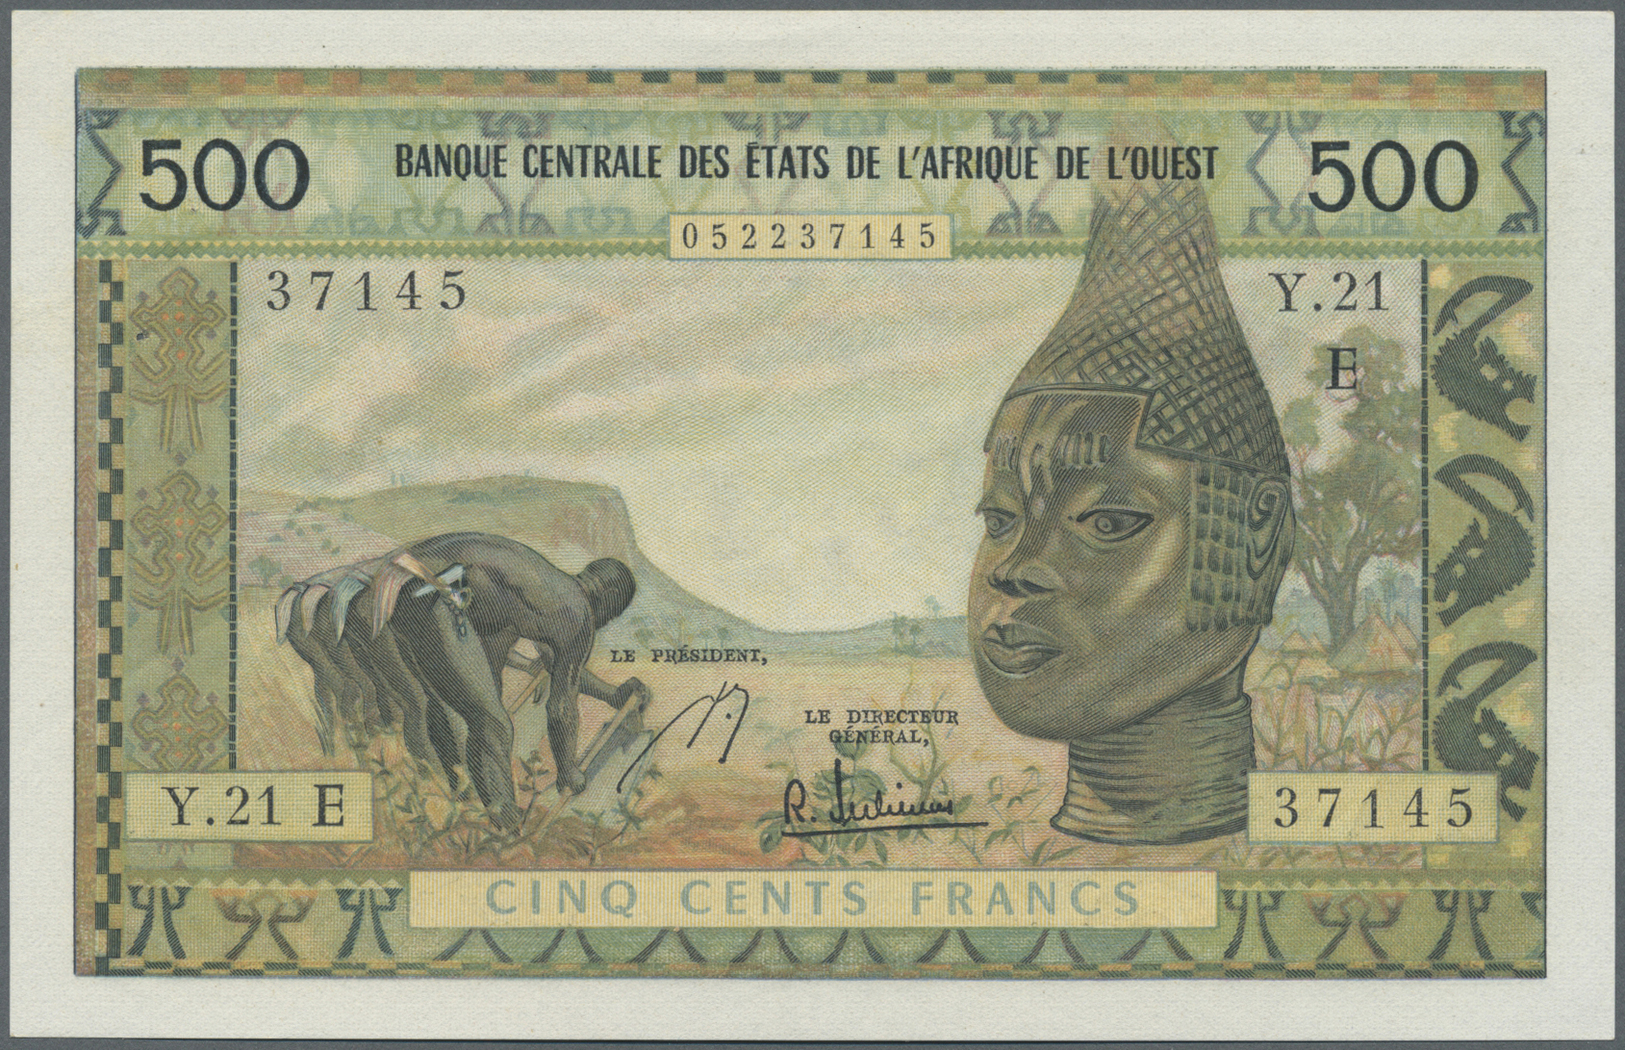 01689 Mauritania / Mauretanien:  Banque Centrale Des États De L'Afrique De L'Ouest Letter "E" = Mauritania 500 Francs ND - Mauritania